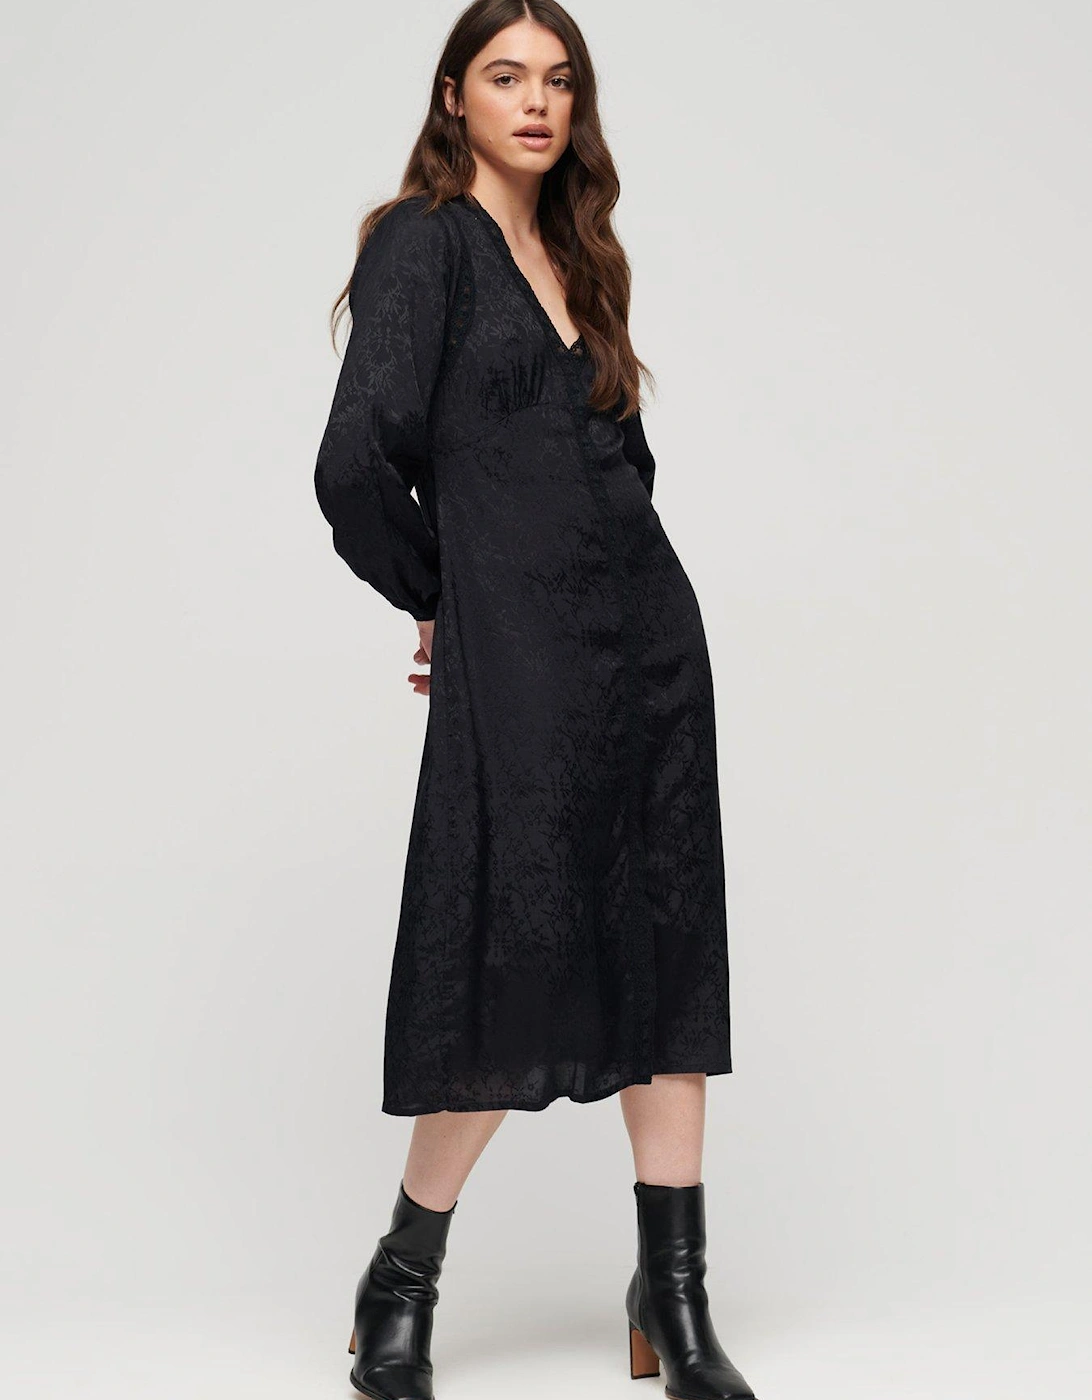 Lace Trim Midi Dress - Black, 6 of 5